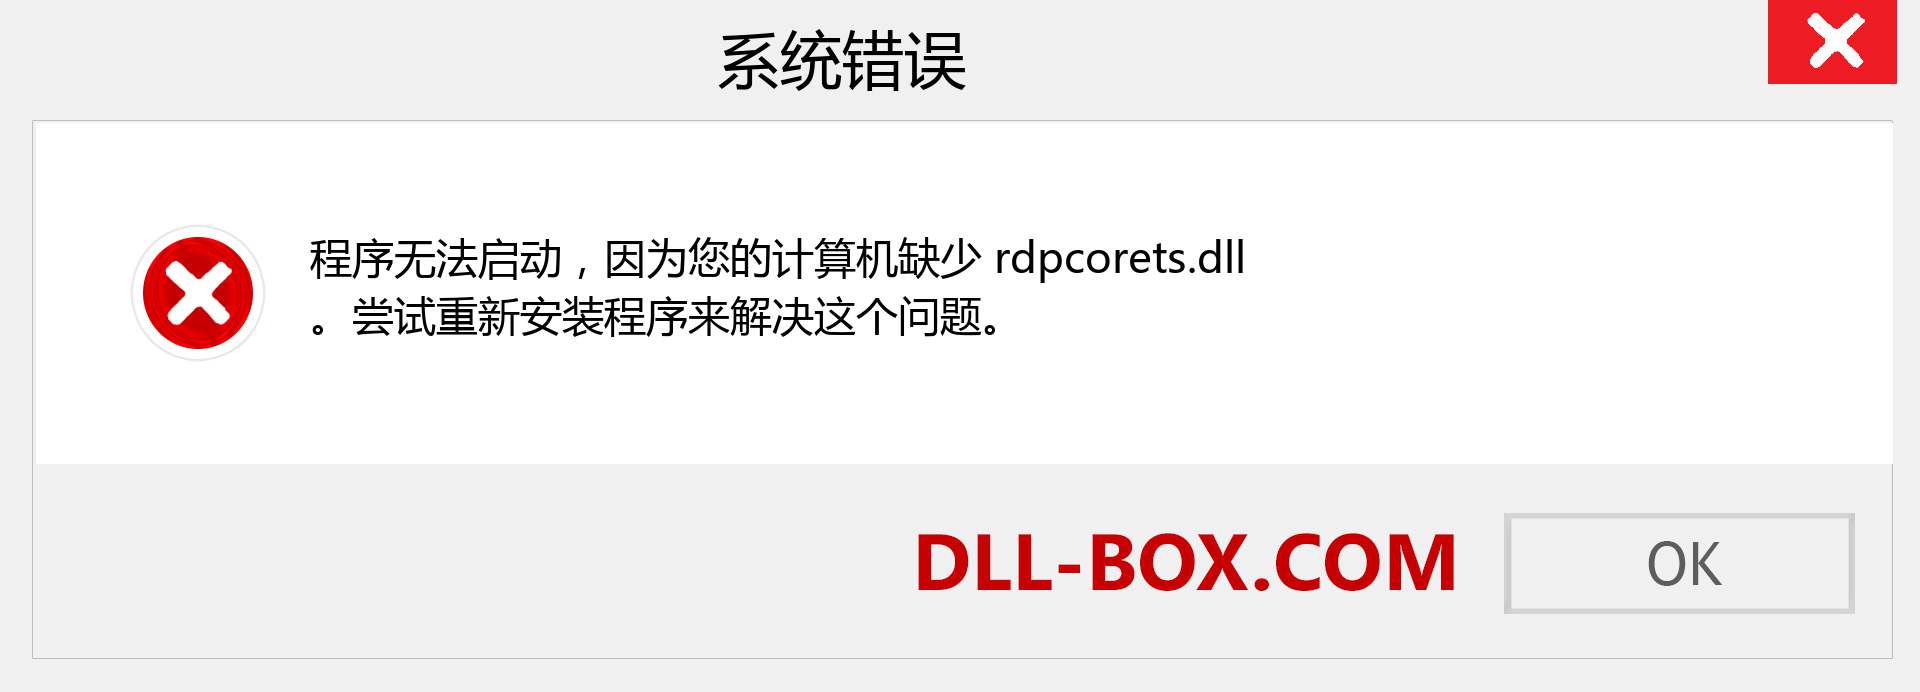 rdpcorets.dll 文件丢失？。 适用于 Windows 7、8、10 的下载 - 修复 Windows、照片、图像上的 rdpcorets dll 丢失错误